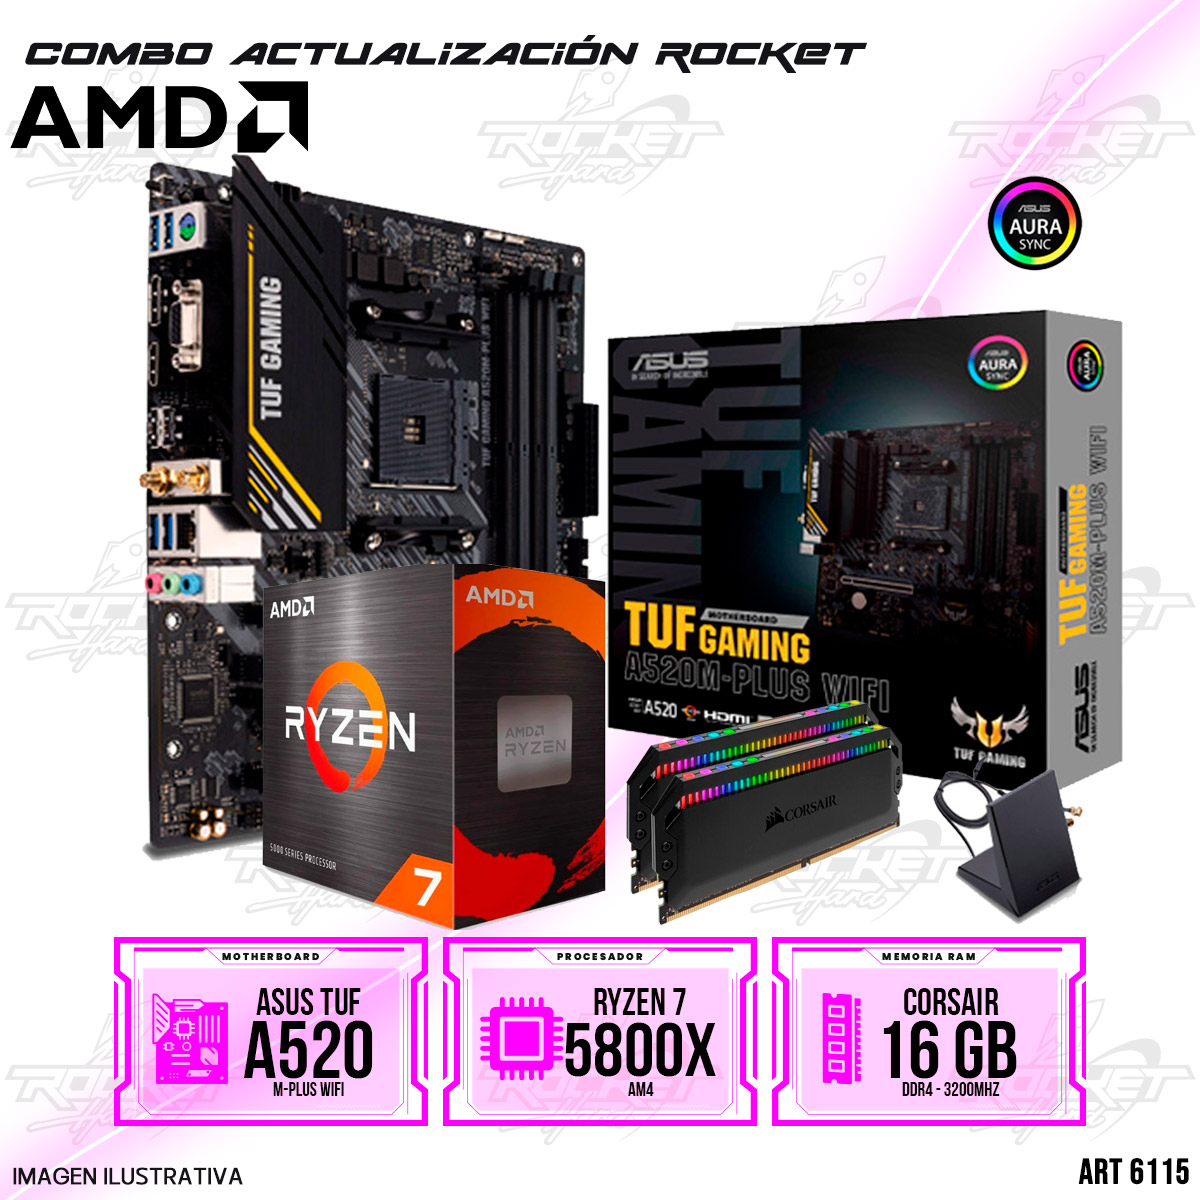 COMBO ROCKET AMD RYZEN 7 5800X - A520 WIFI - 16GB RAM